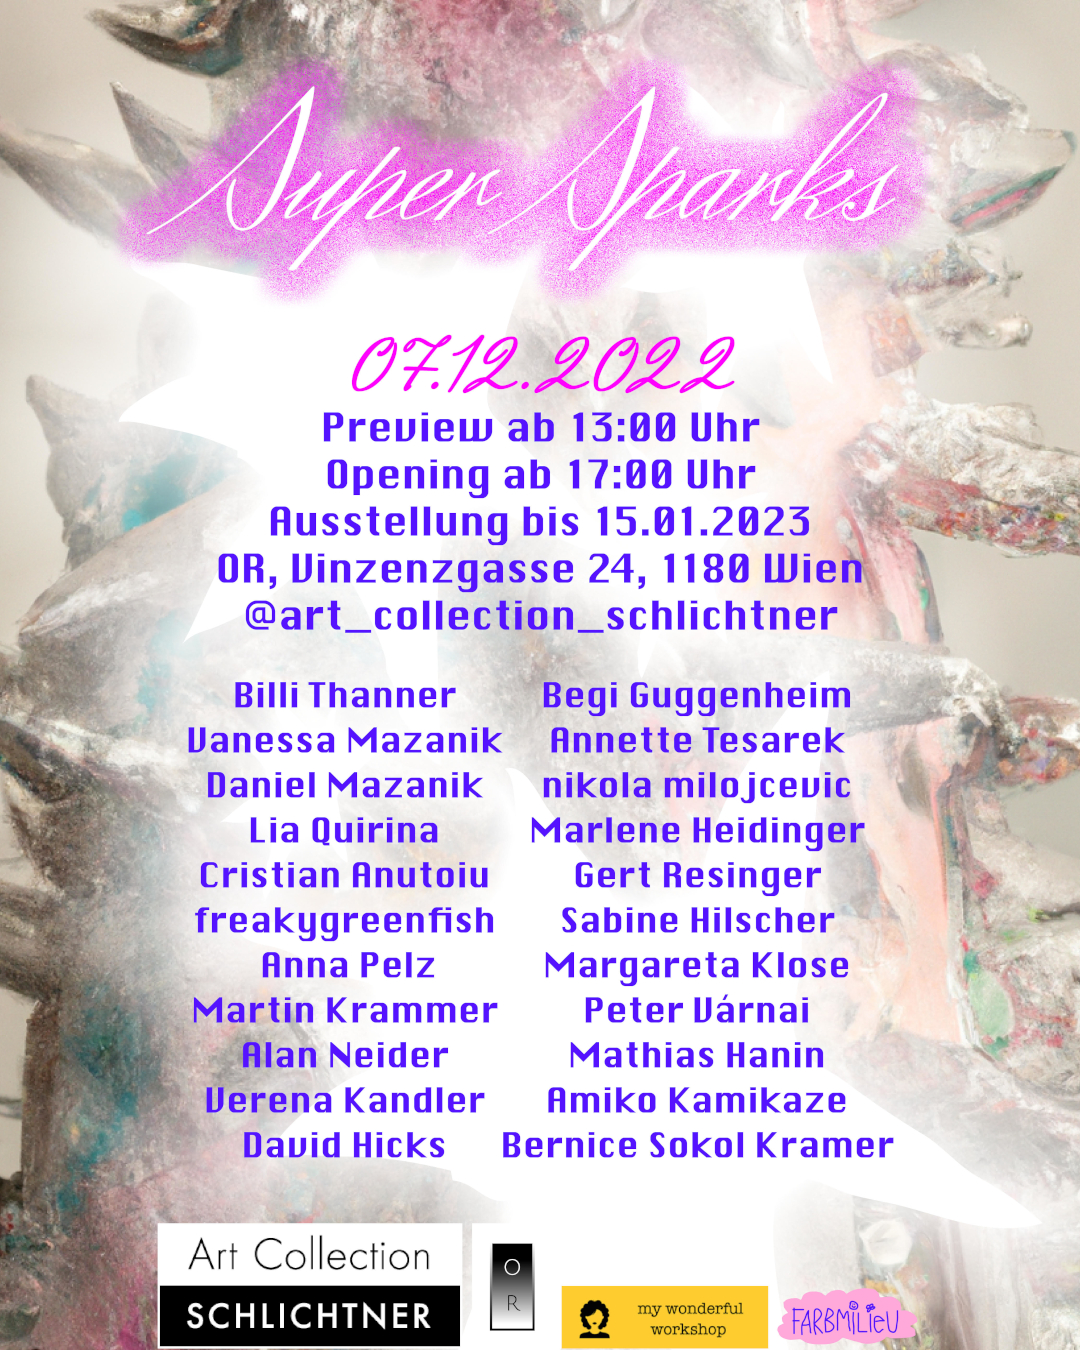 SUPER SPARKS – 07.12.2022 – 15.01.2023. Preview  13:00, Opening  17:00 Uhr. Location: OR, Vinzenzgasse 24, 1180 Wien. @art_collection_schlichtner